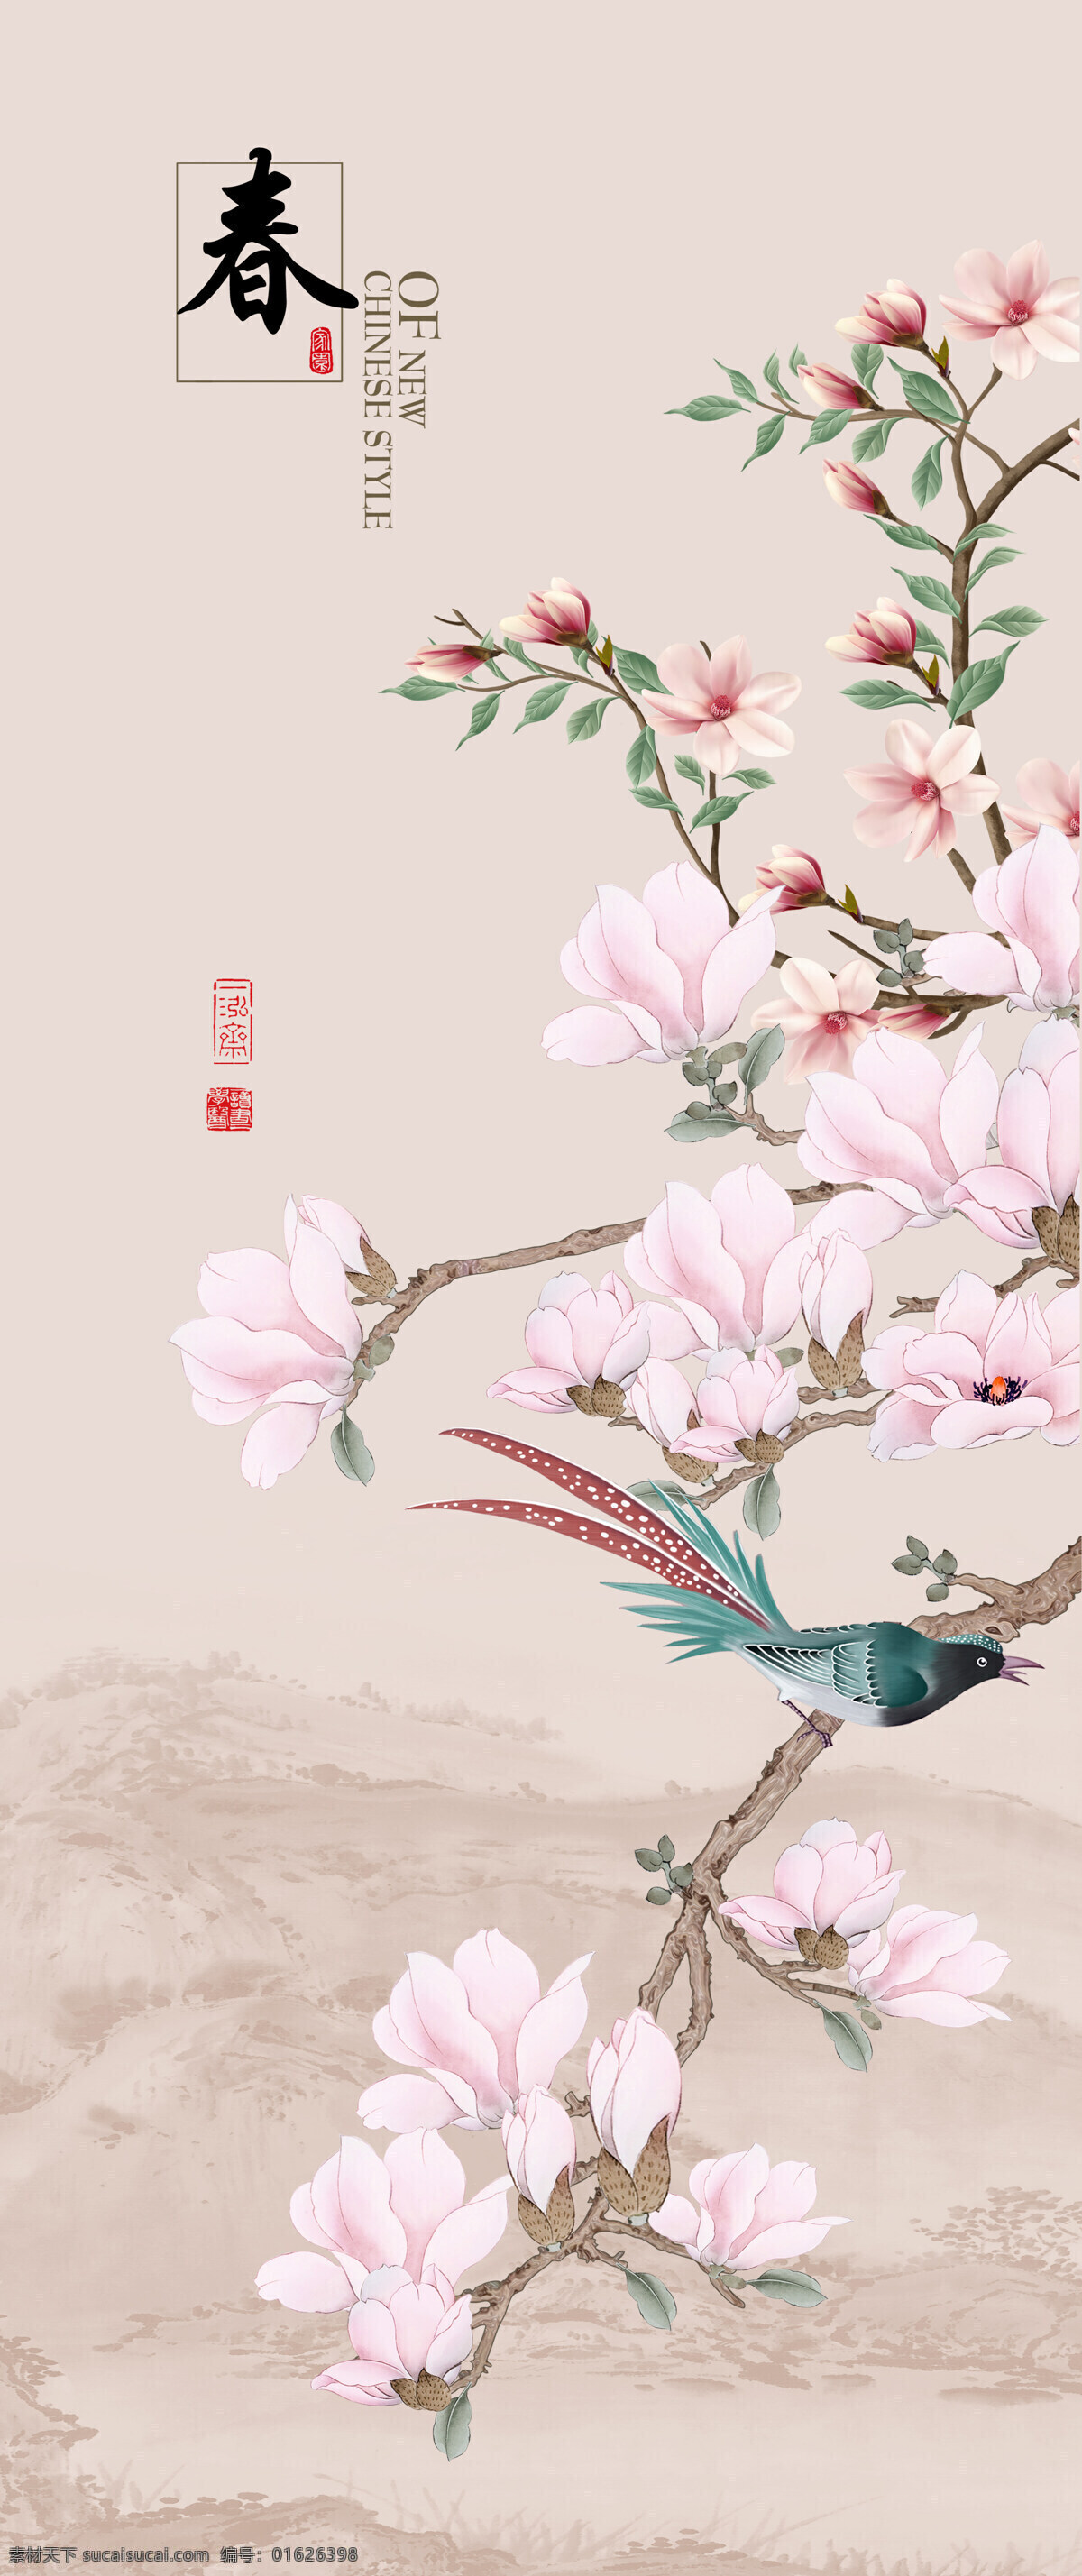 中式 四季 春夏秋冬 花鸟 梅花 桃花 鸟 国画 文化艺术 传统文化